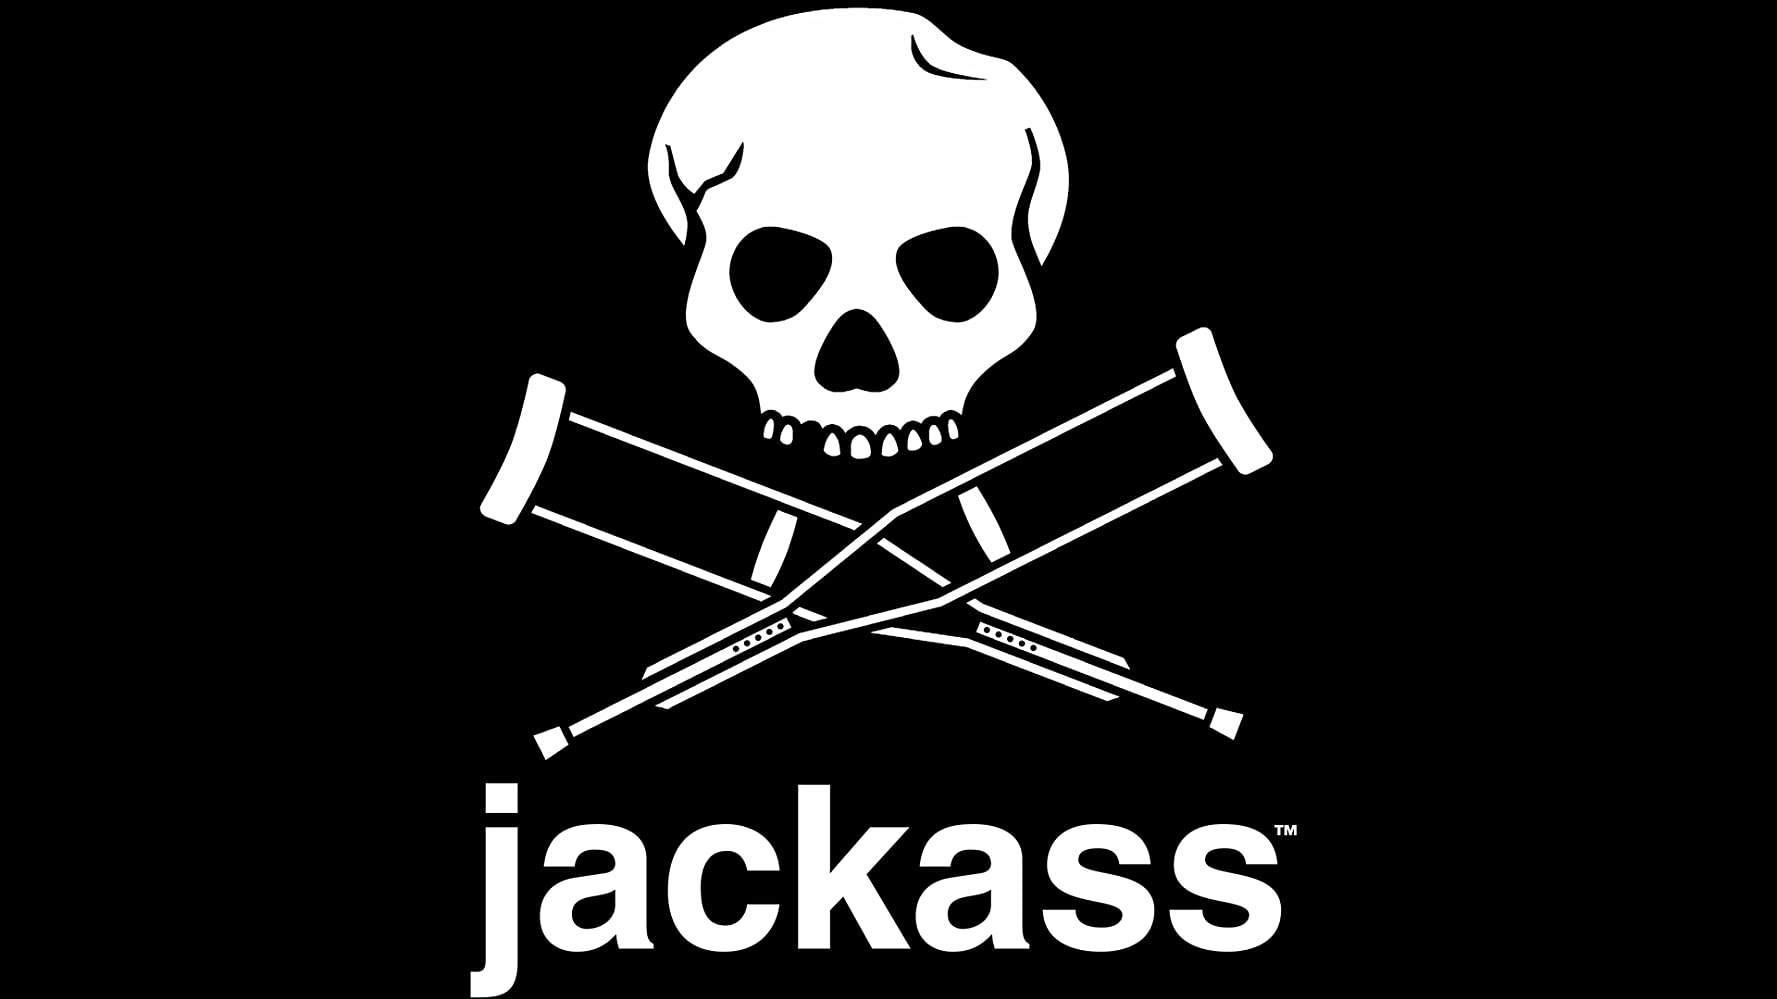 Jack ass ranch